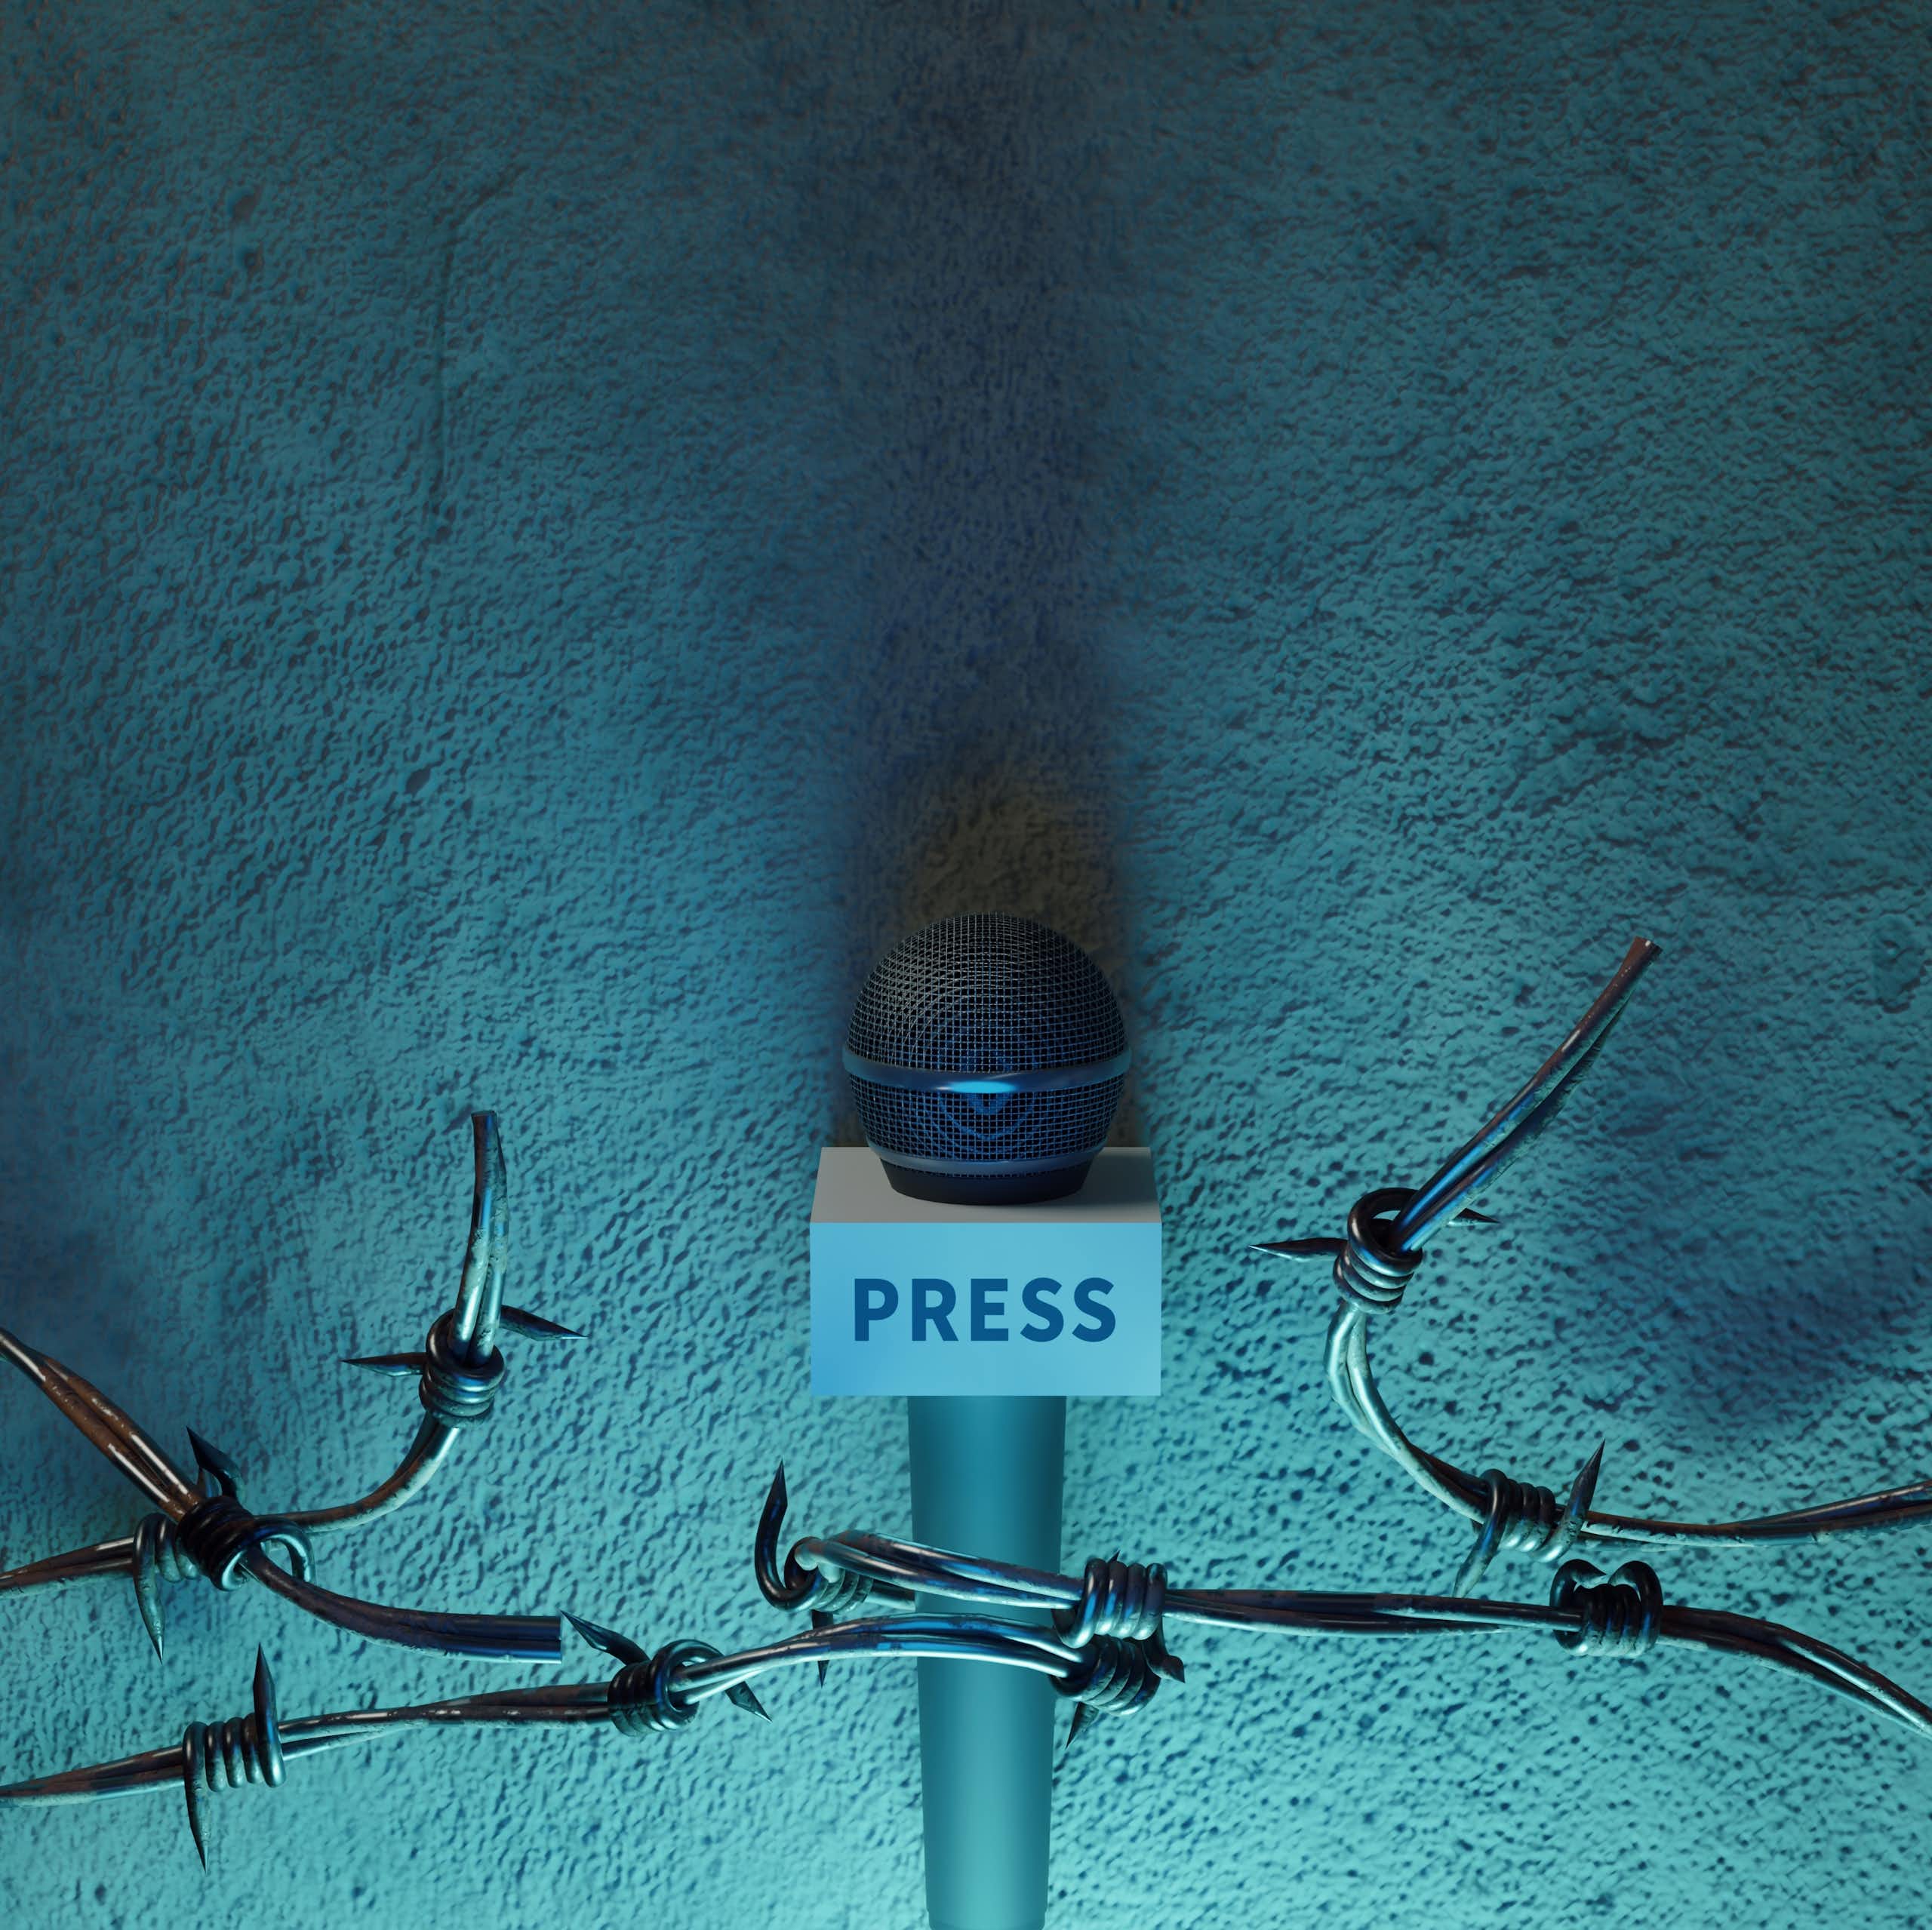 Pengguna internet meningkat tapi kebebasan pers terancam: riset soroti 2 tantangan yang dihadapi media digital